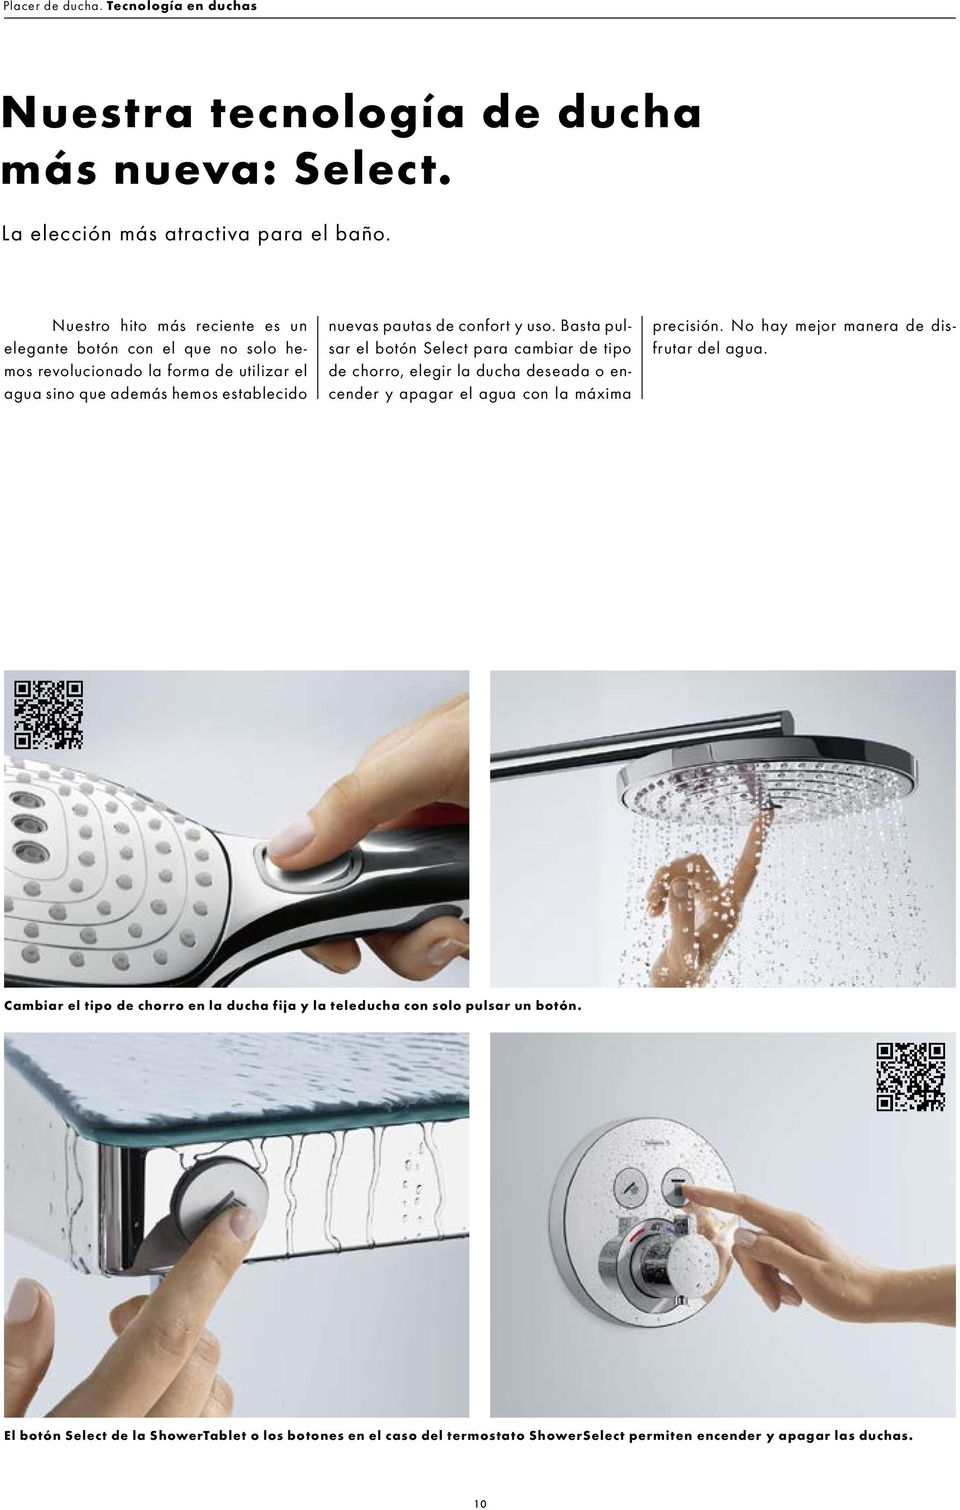 y uso. Basta pulsar el botón Select para cambiar de tipo de chorro, elegir la ducha deseada o encender y apagar el agua con la máxima precisión.